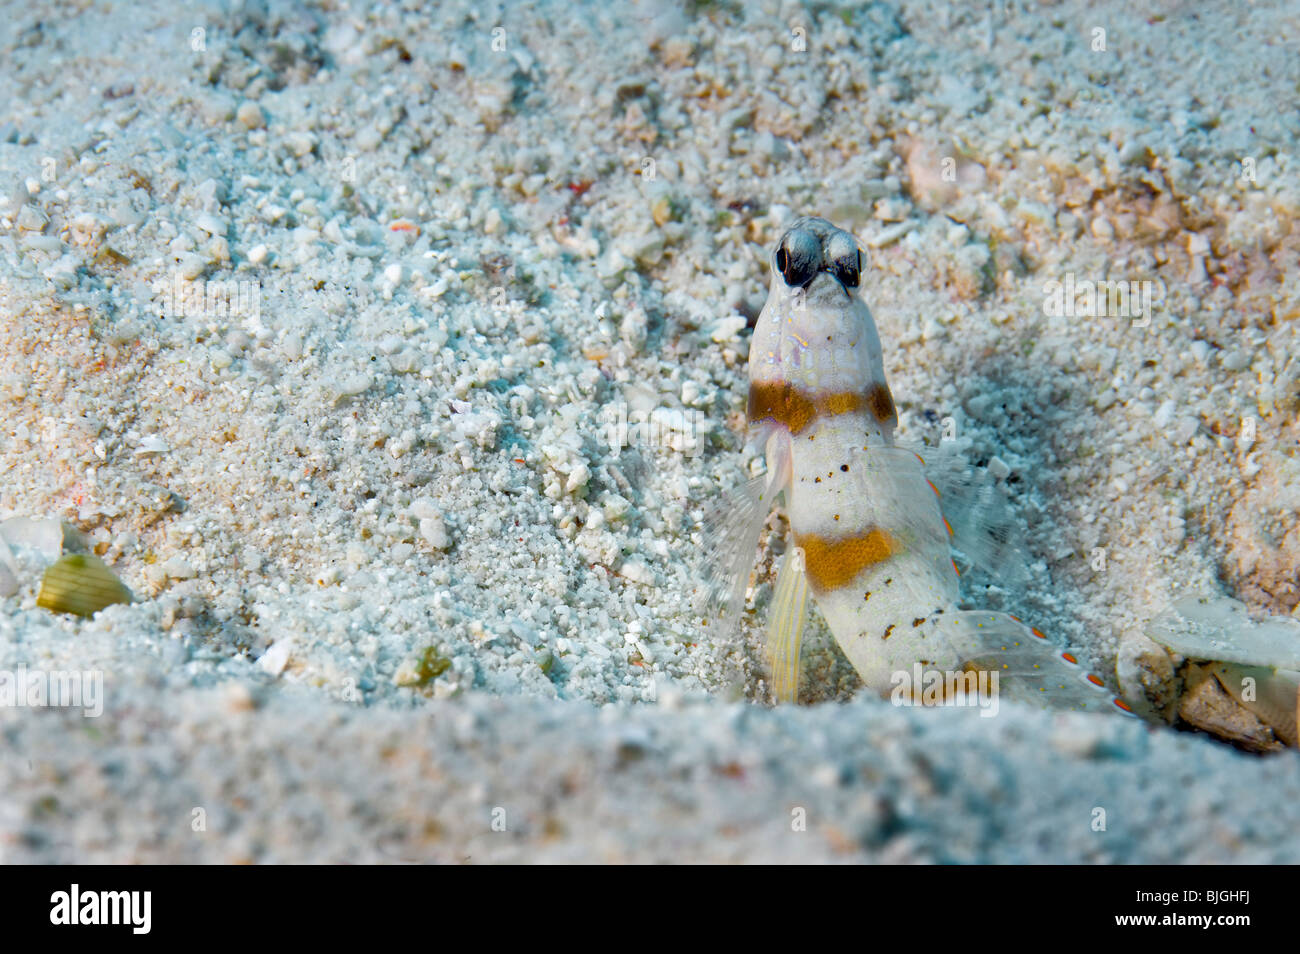 Opistognathidae Unterwasser Bild Stein Sand sandiger Fisch Loch Riff Bereich Bau in sandigem Substrat Stockfoto